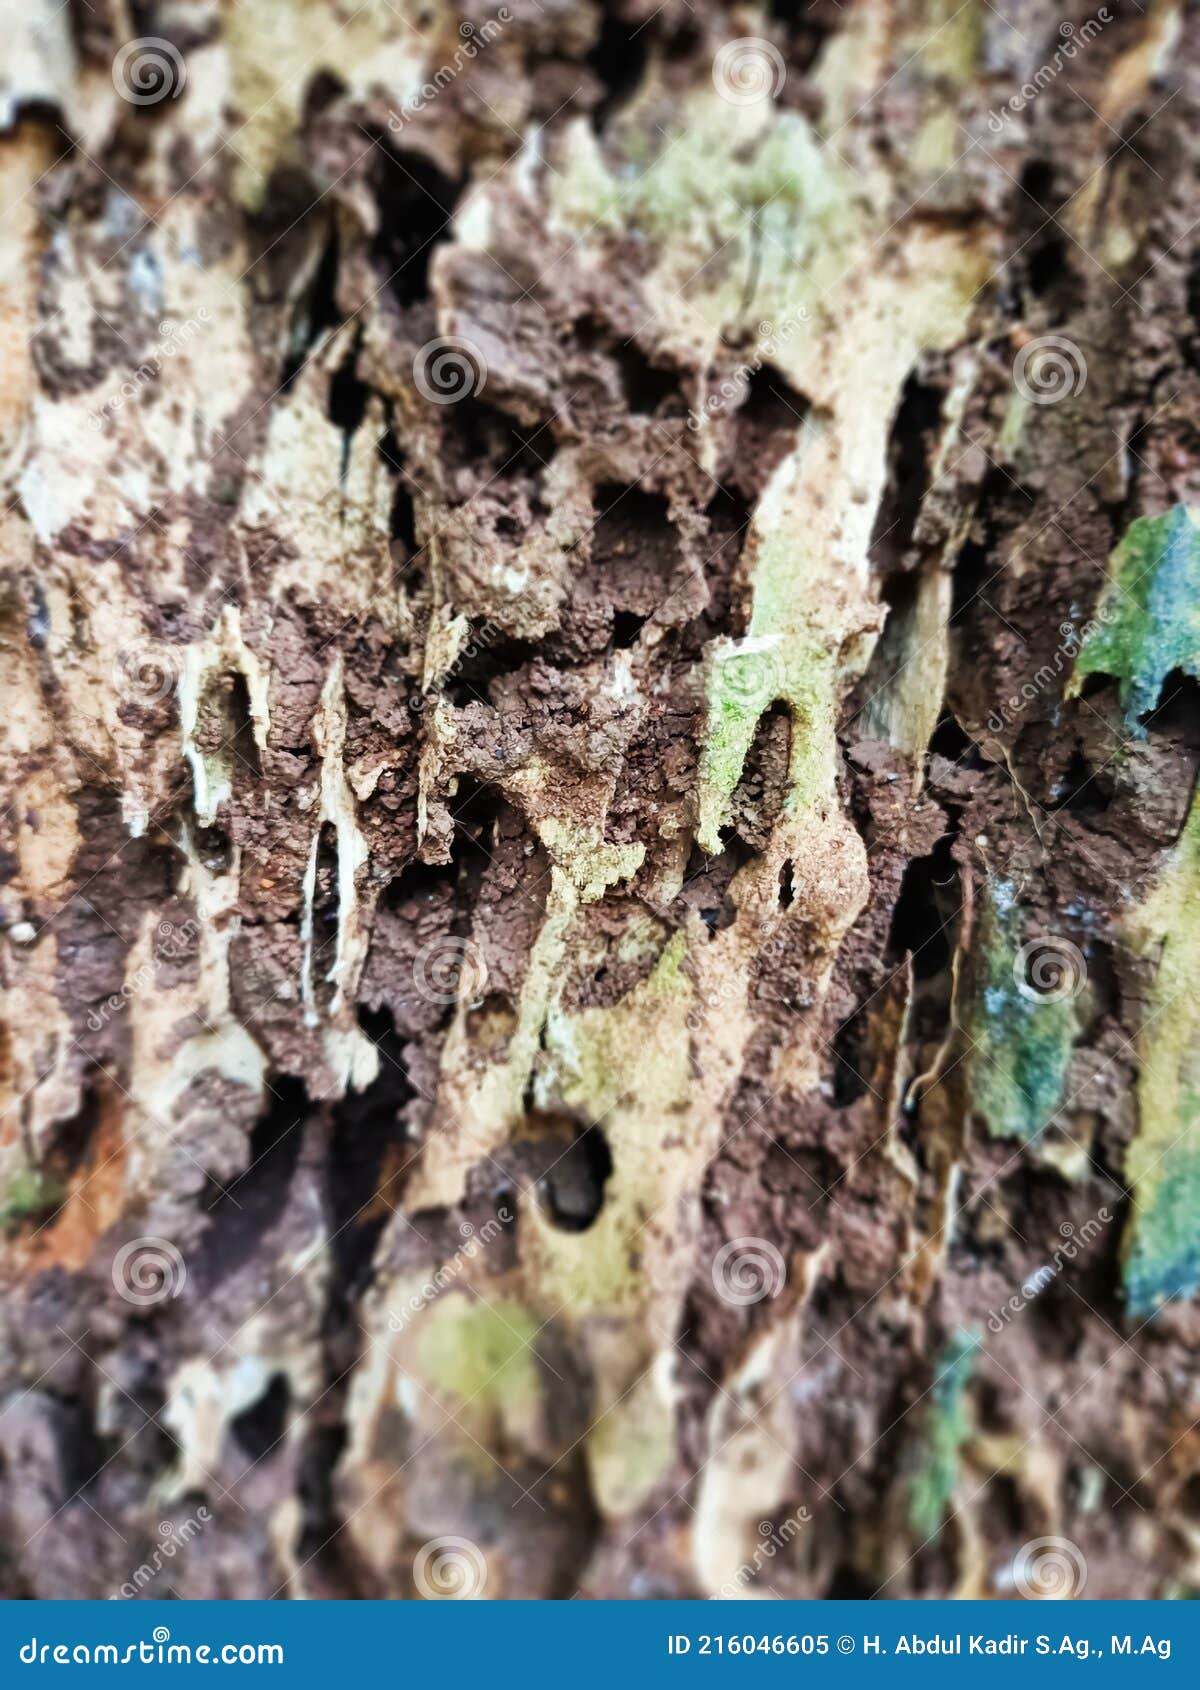 Details 48 plagas en troncos de árboles